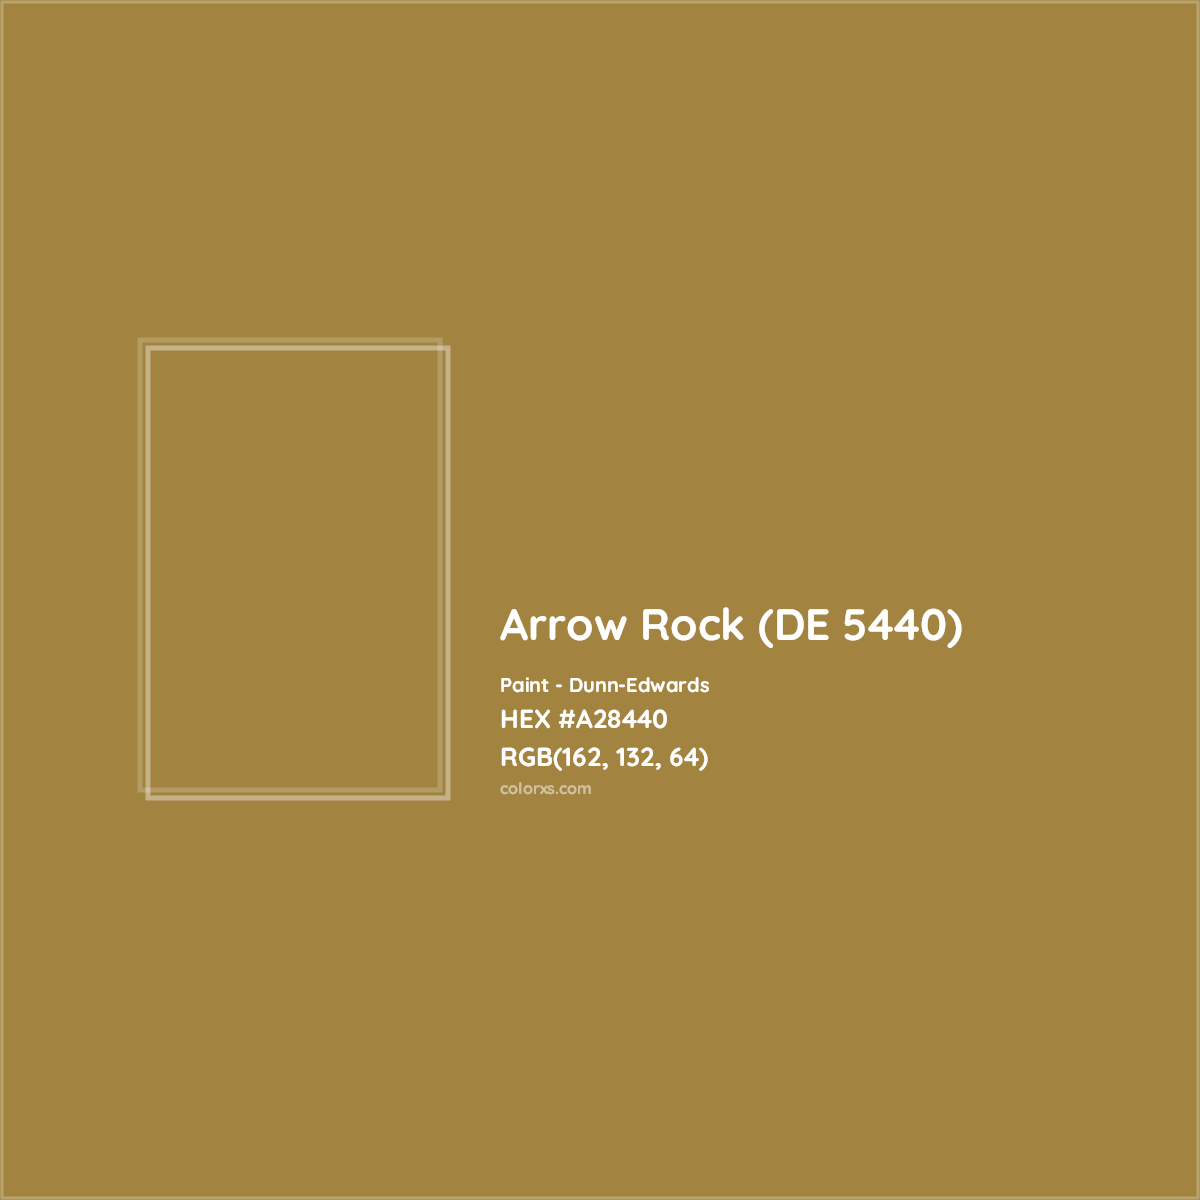 HEX #A28440 Arrow Rock (DE 5440) Paint Dunn-Edwards - Color Code